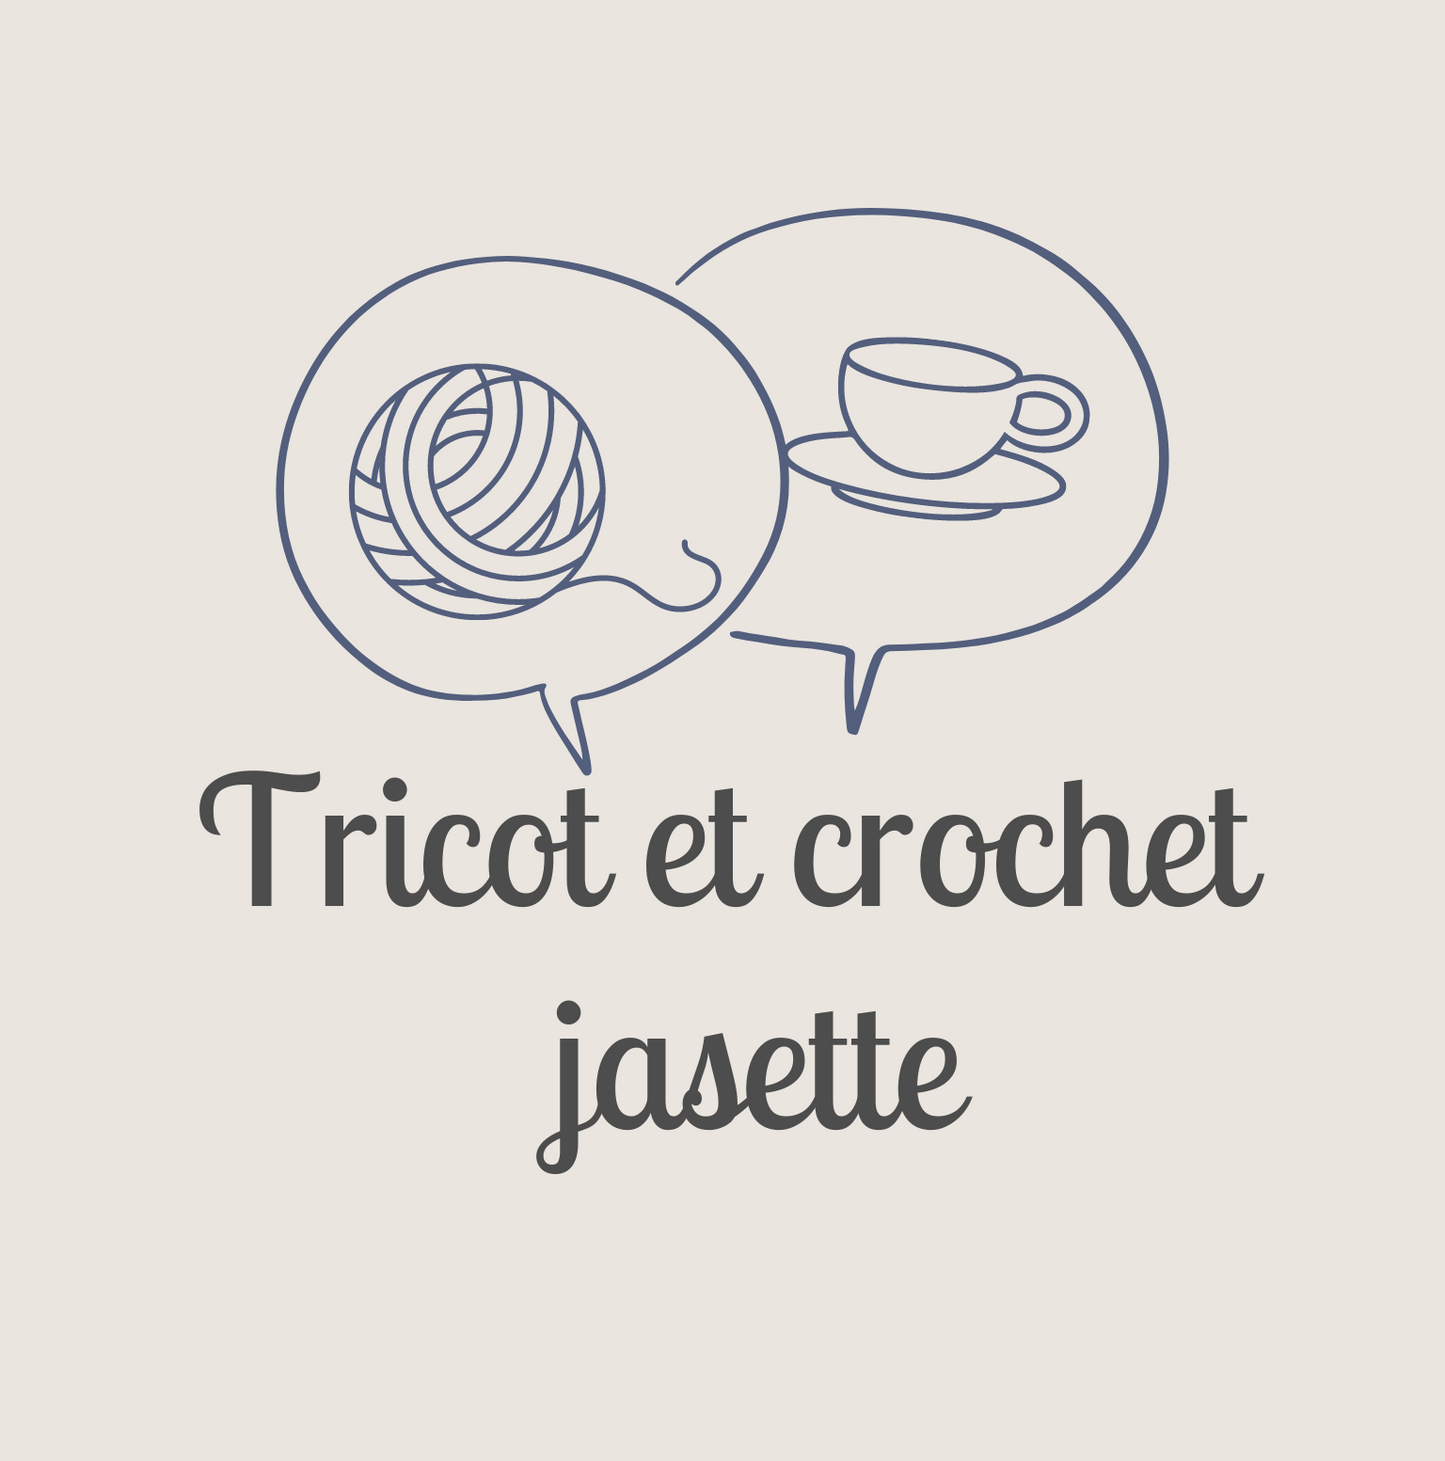 Tricot et crochet Jasette